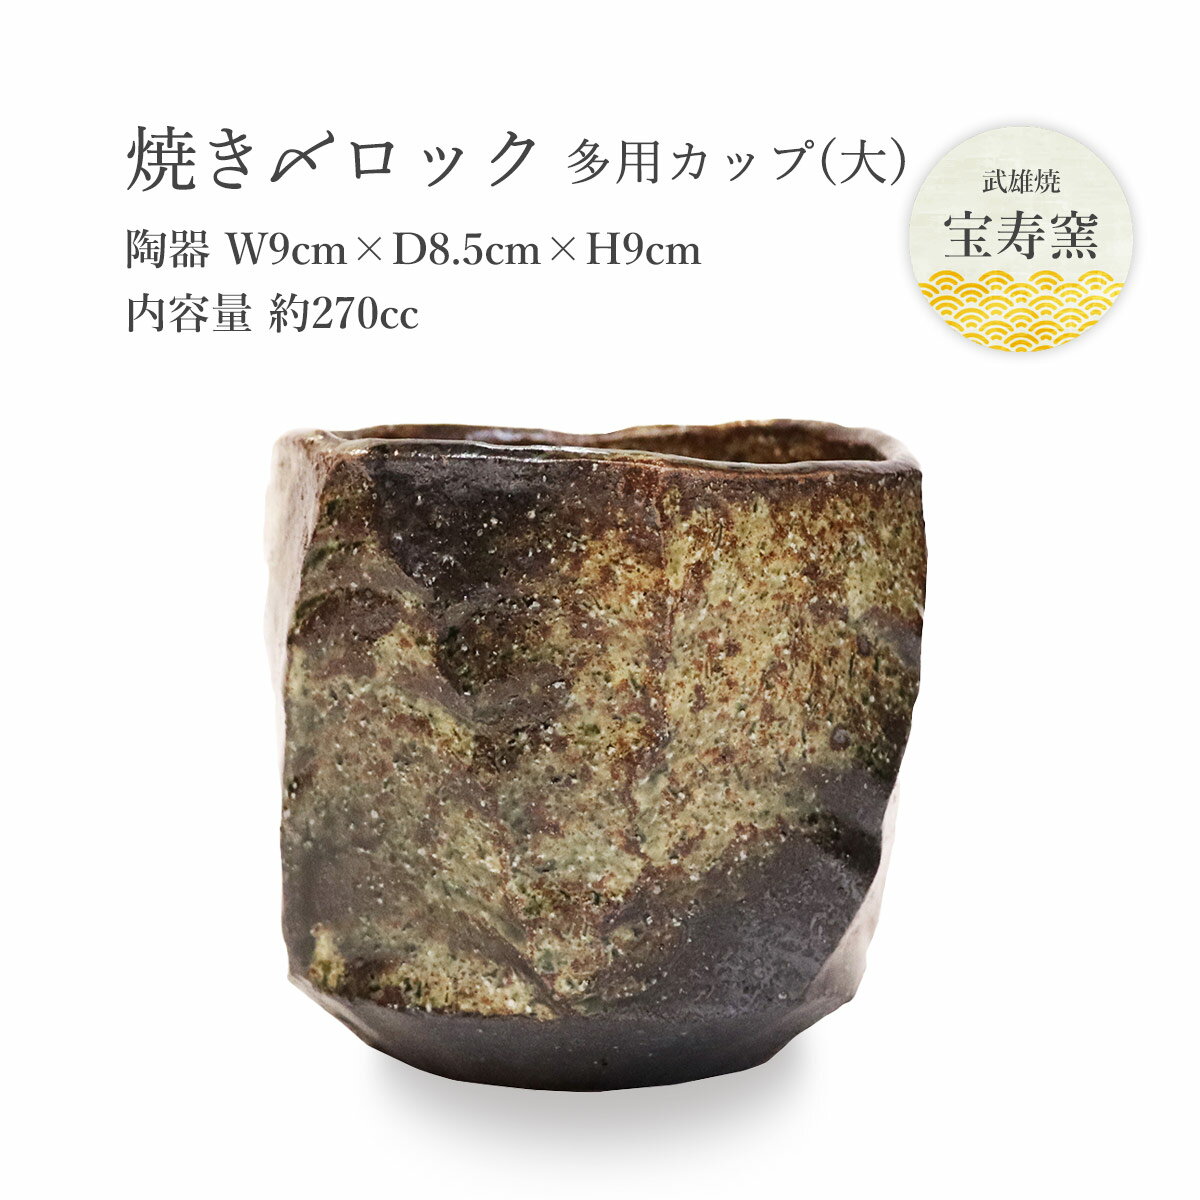 【スーパーセール価格】[宝寿窯] 工芸品 陶器 焼〆ロック多